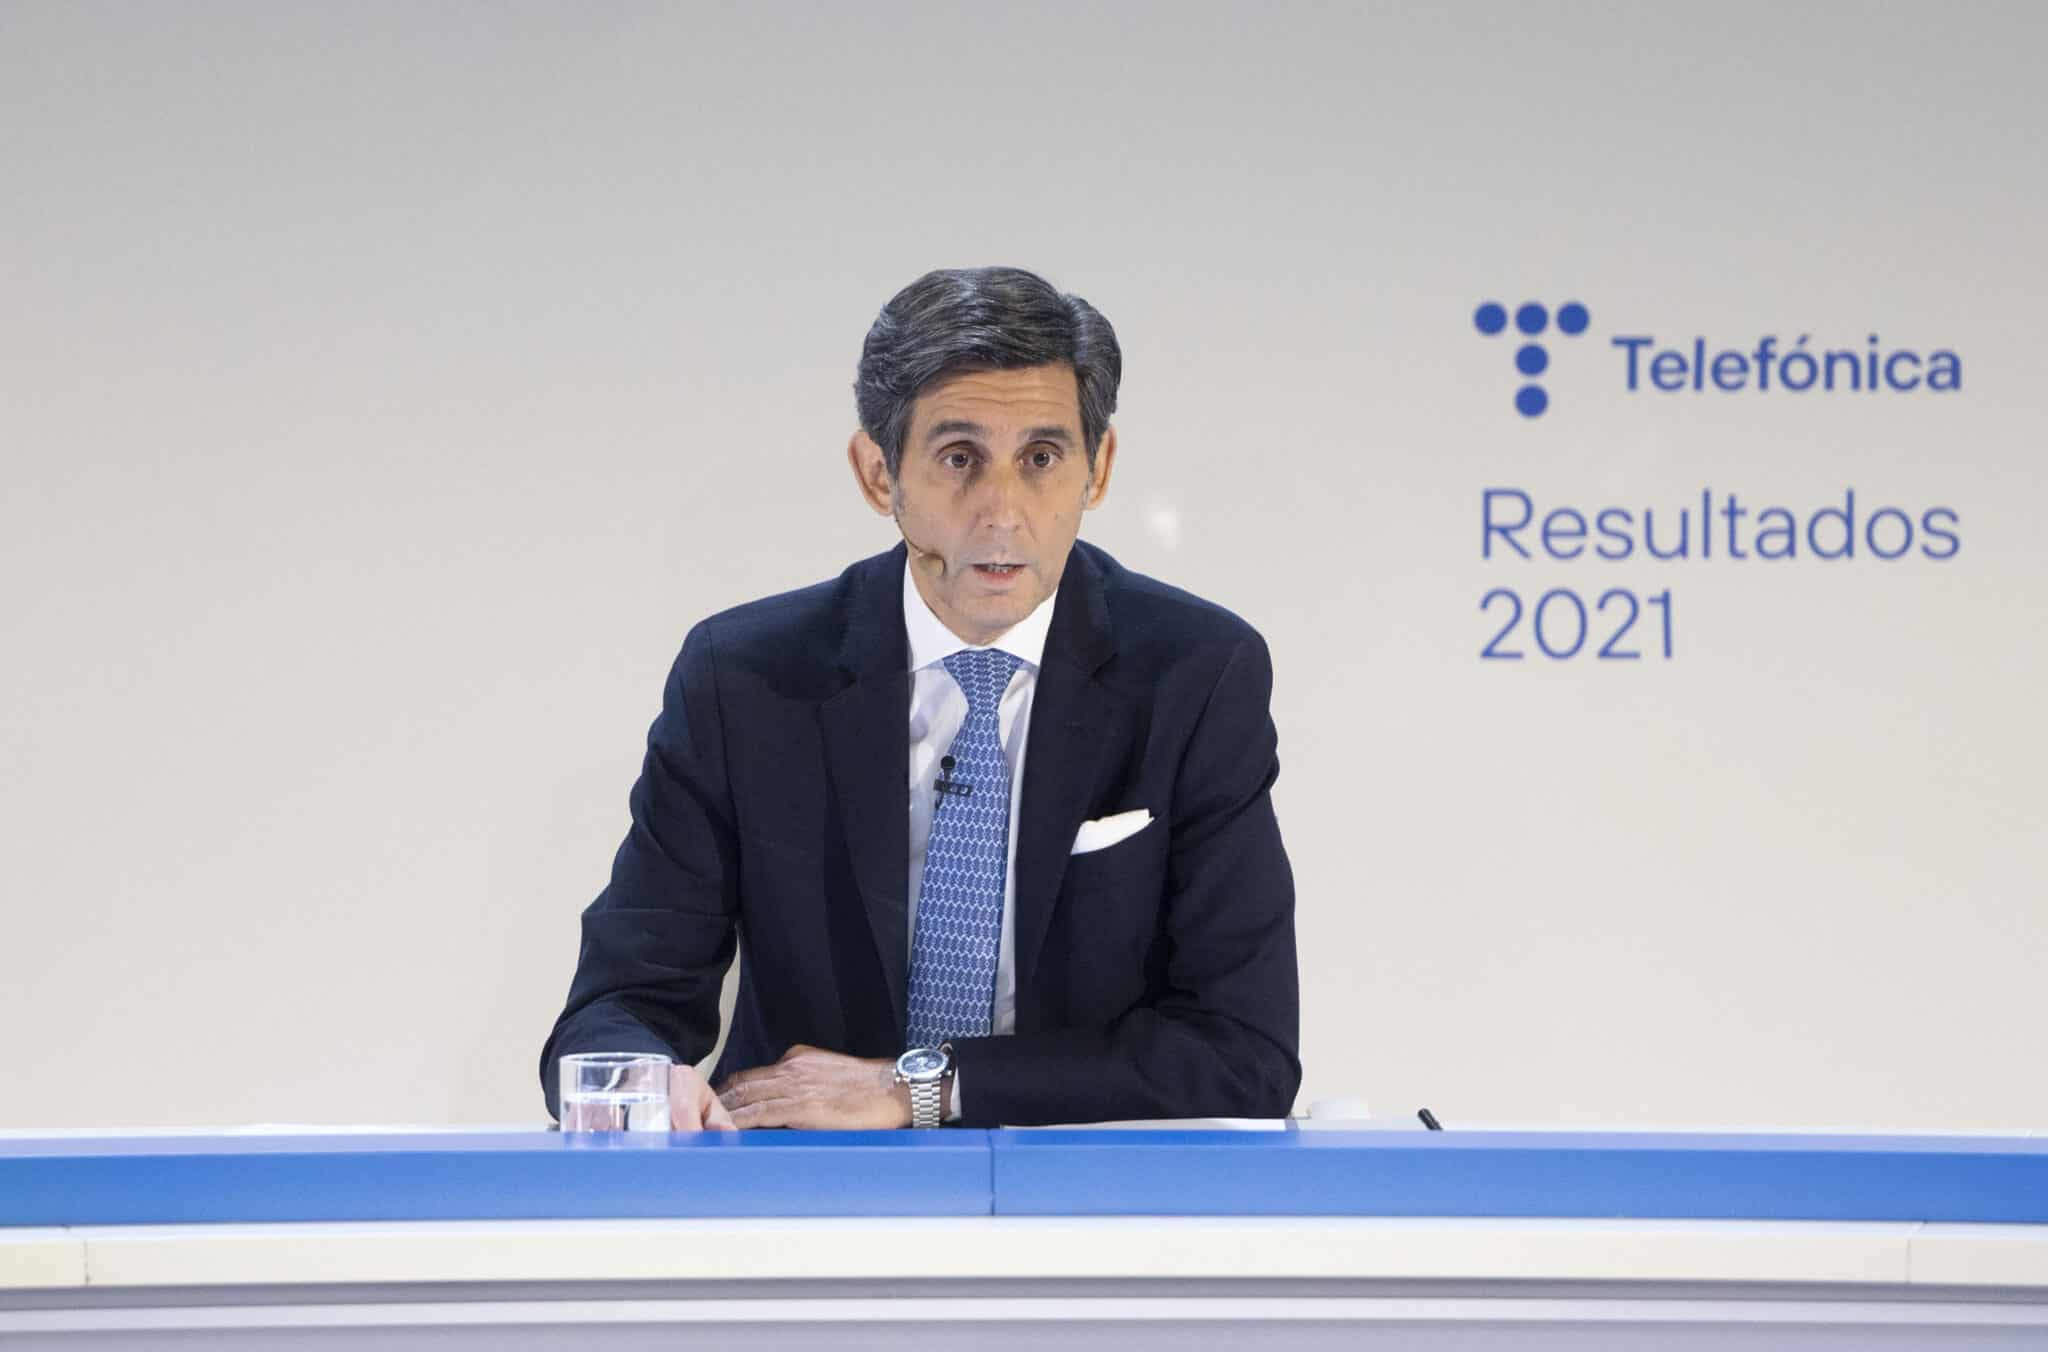 El presidente ejecutivo de Telefónica, José María Álvarez-Pallete, interviene en una rueda de prensa para analizar los resultados de 2021, en Distrito Telefónica, a 24 de febrero de 2022.